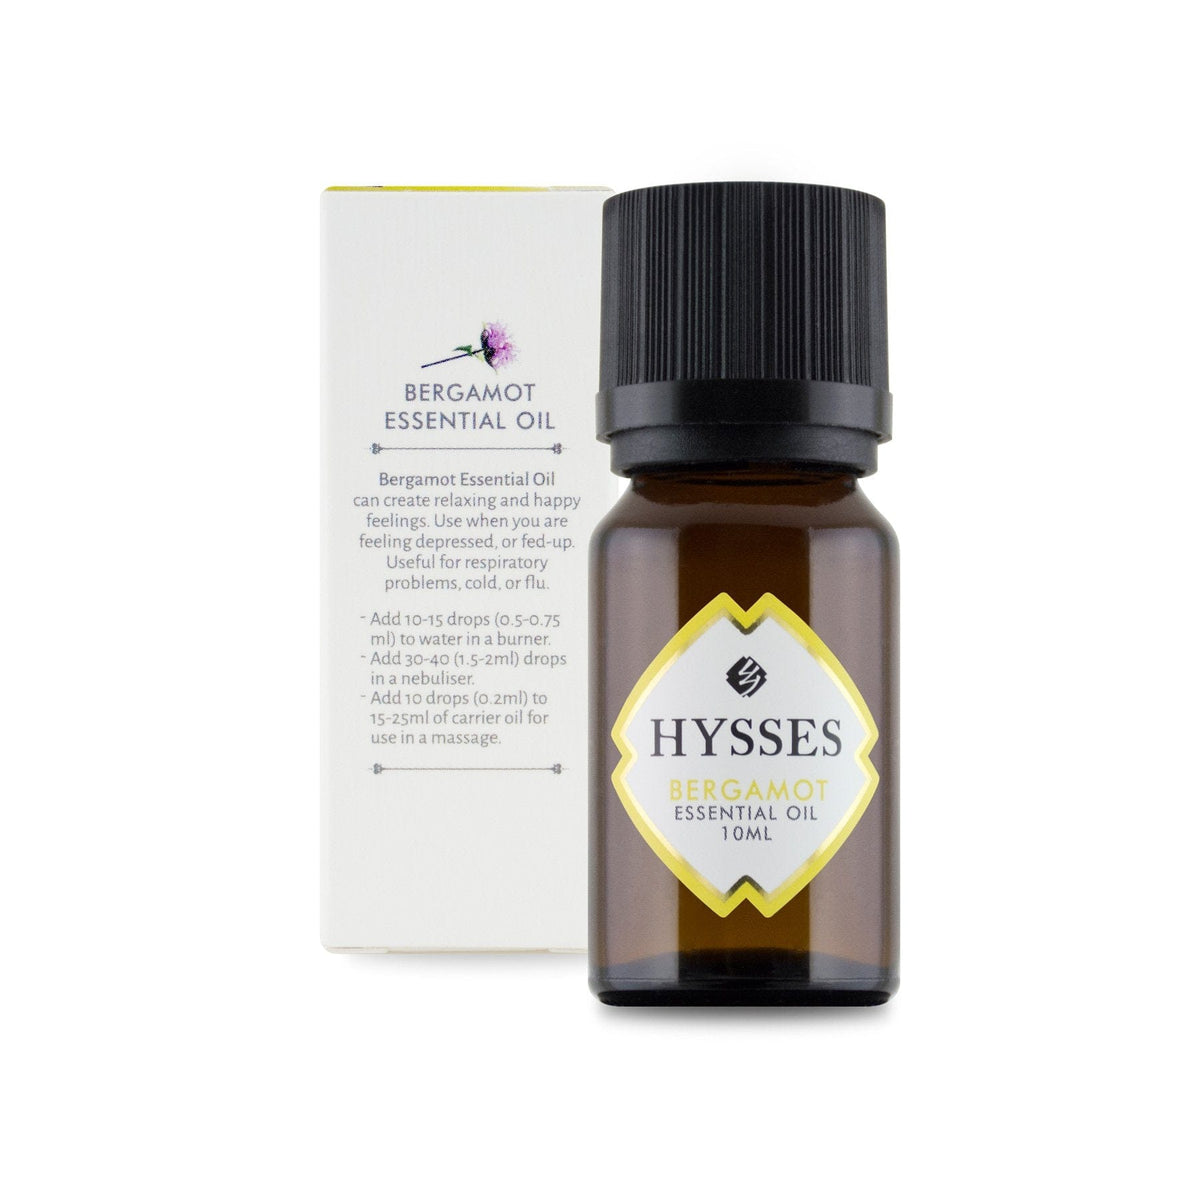 Hysses Essential Oil Essential Oil Bergamot